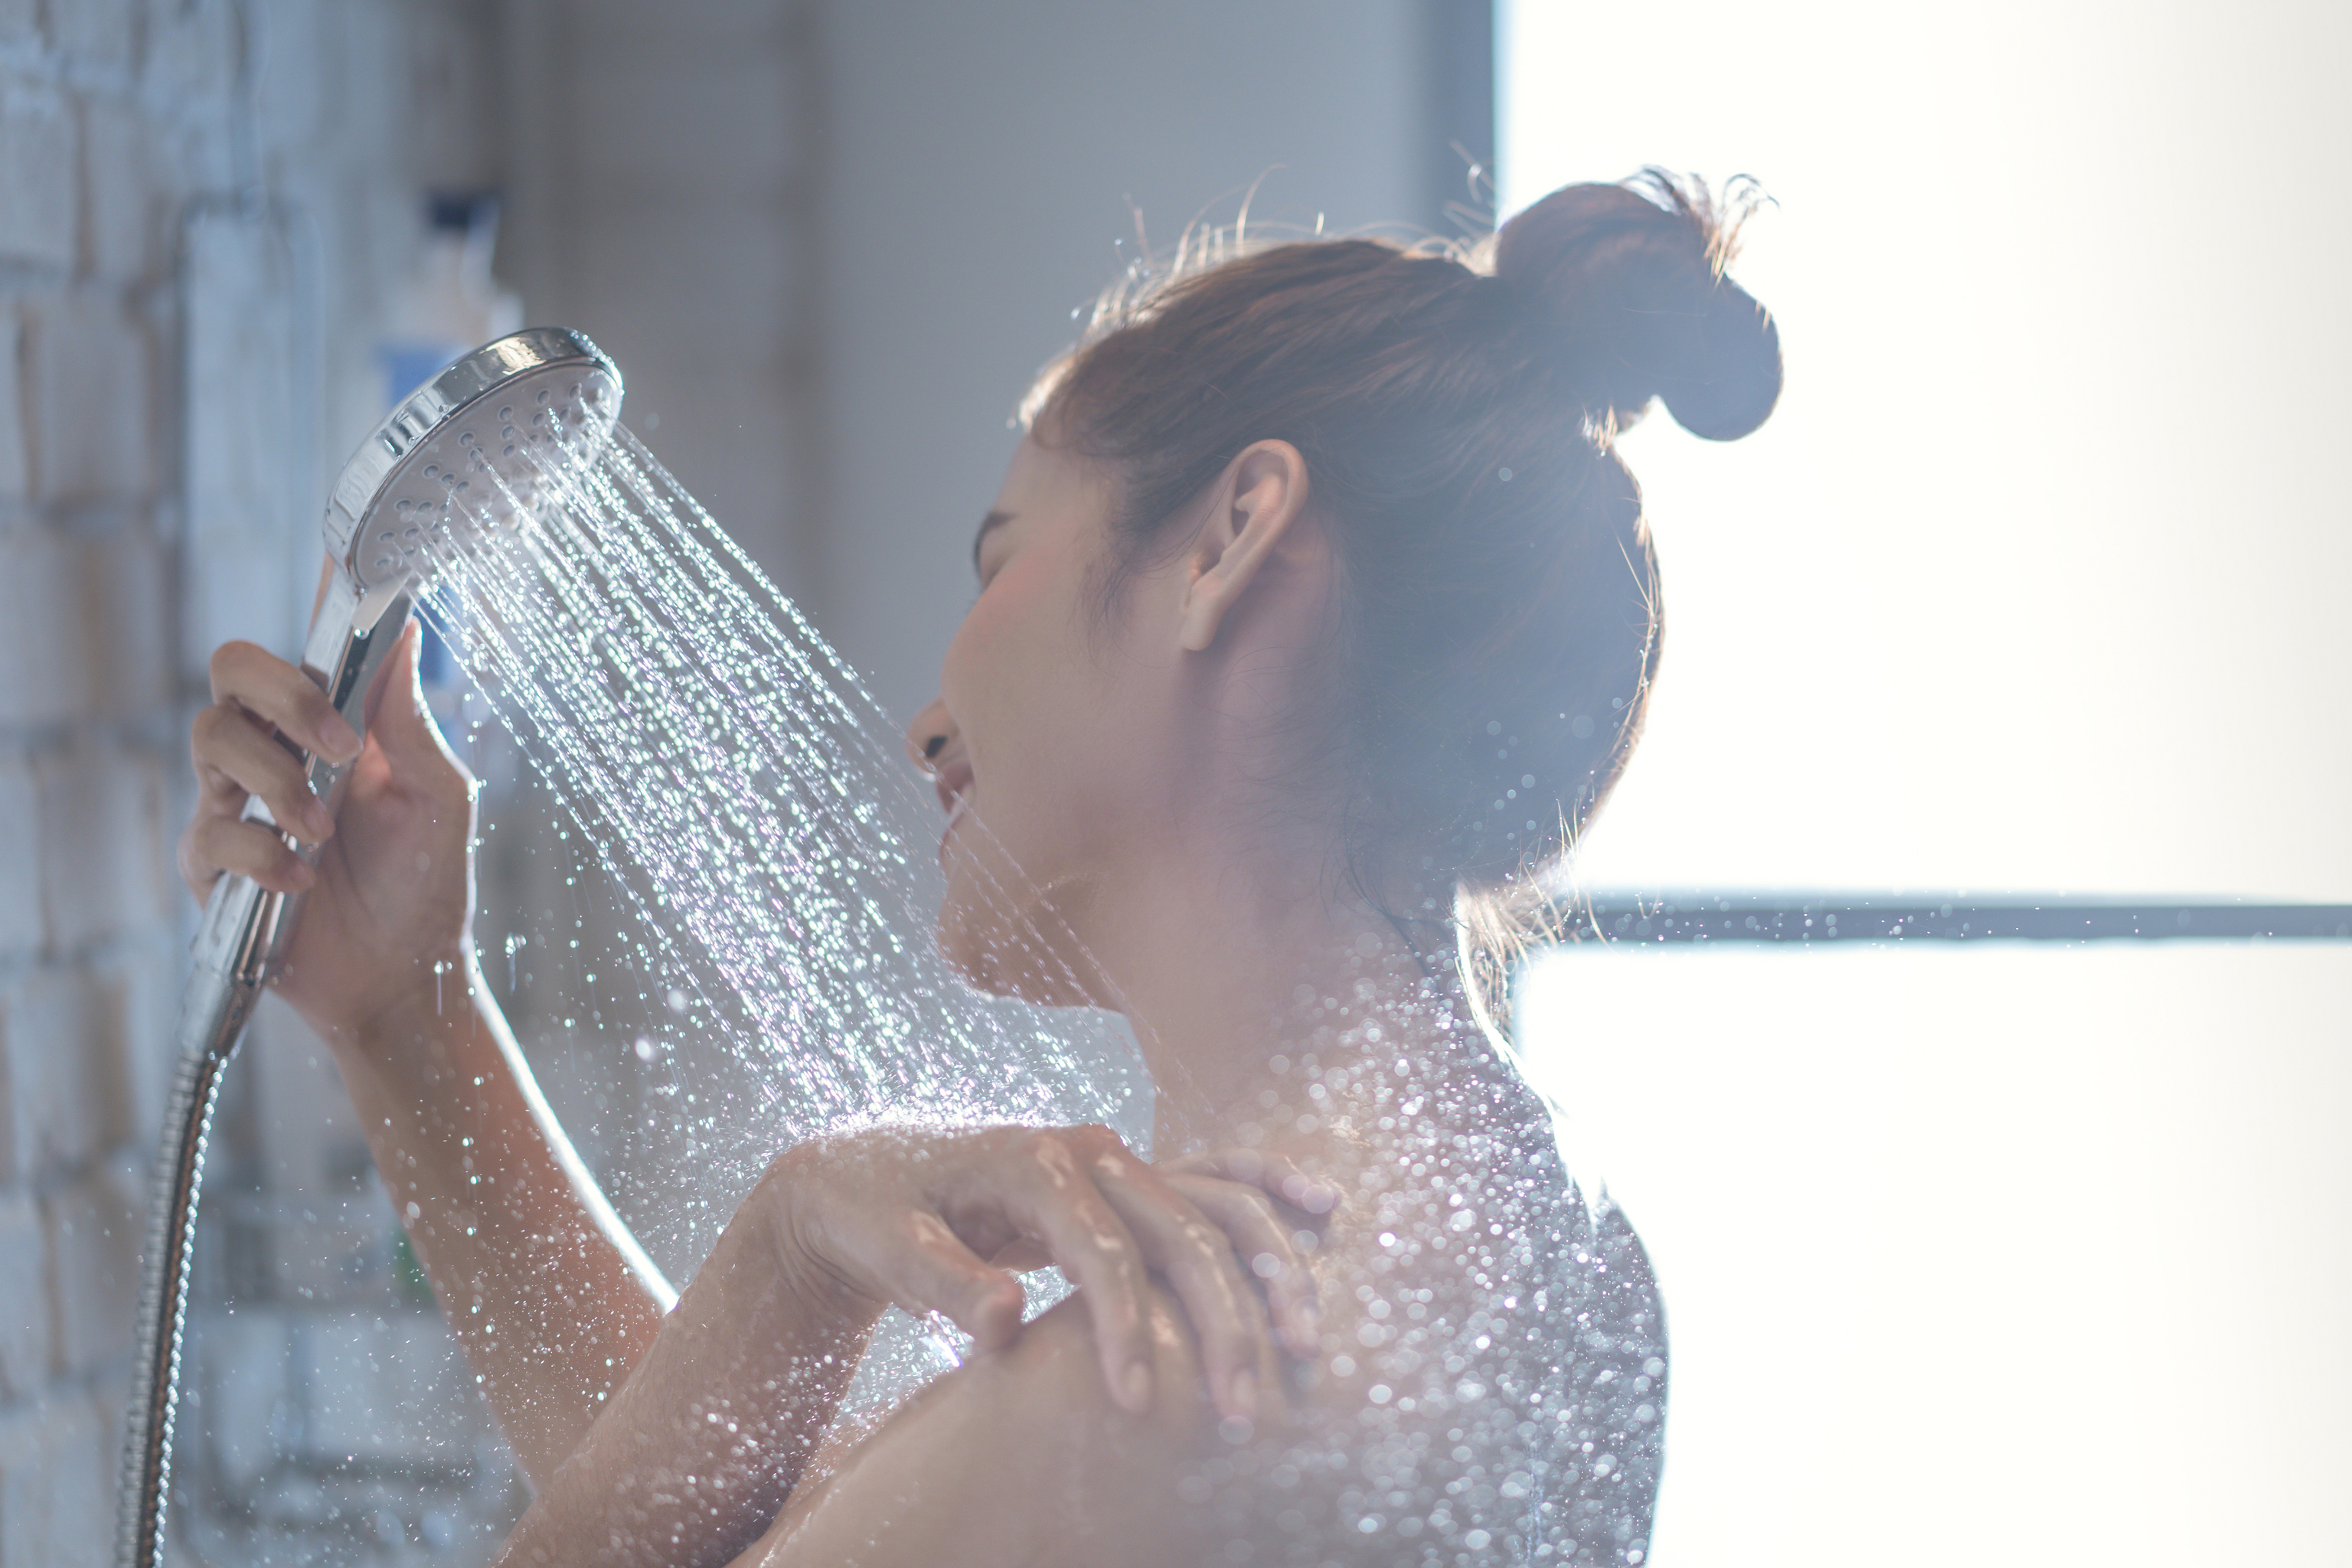 Así es la primera alcachofa de la ducha diseñada específicamente para masturbarse